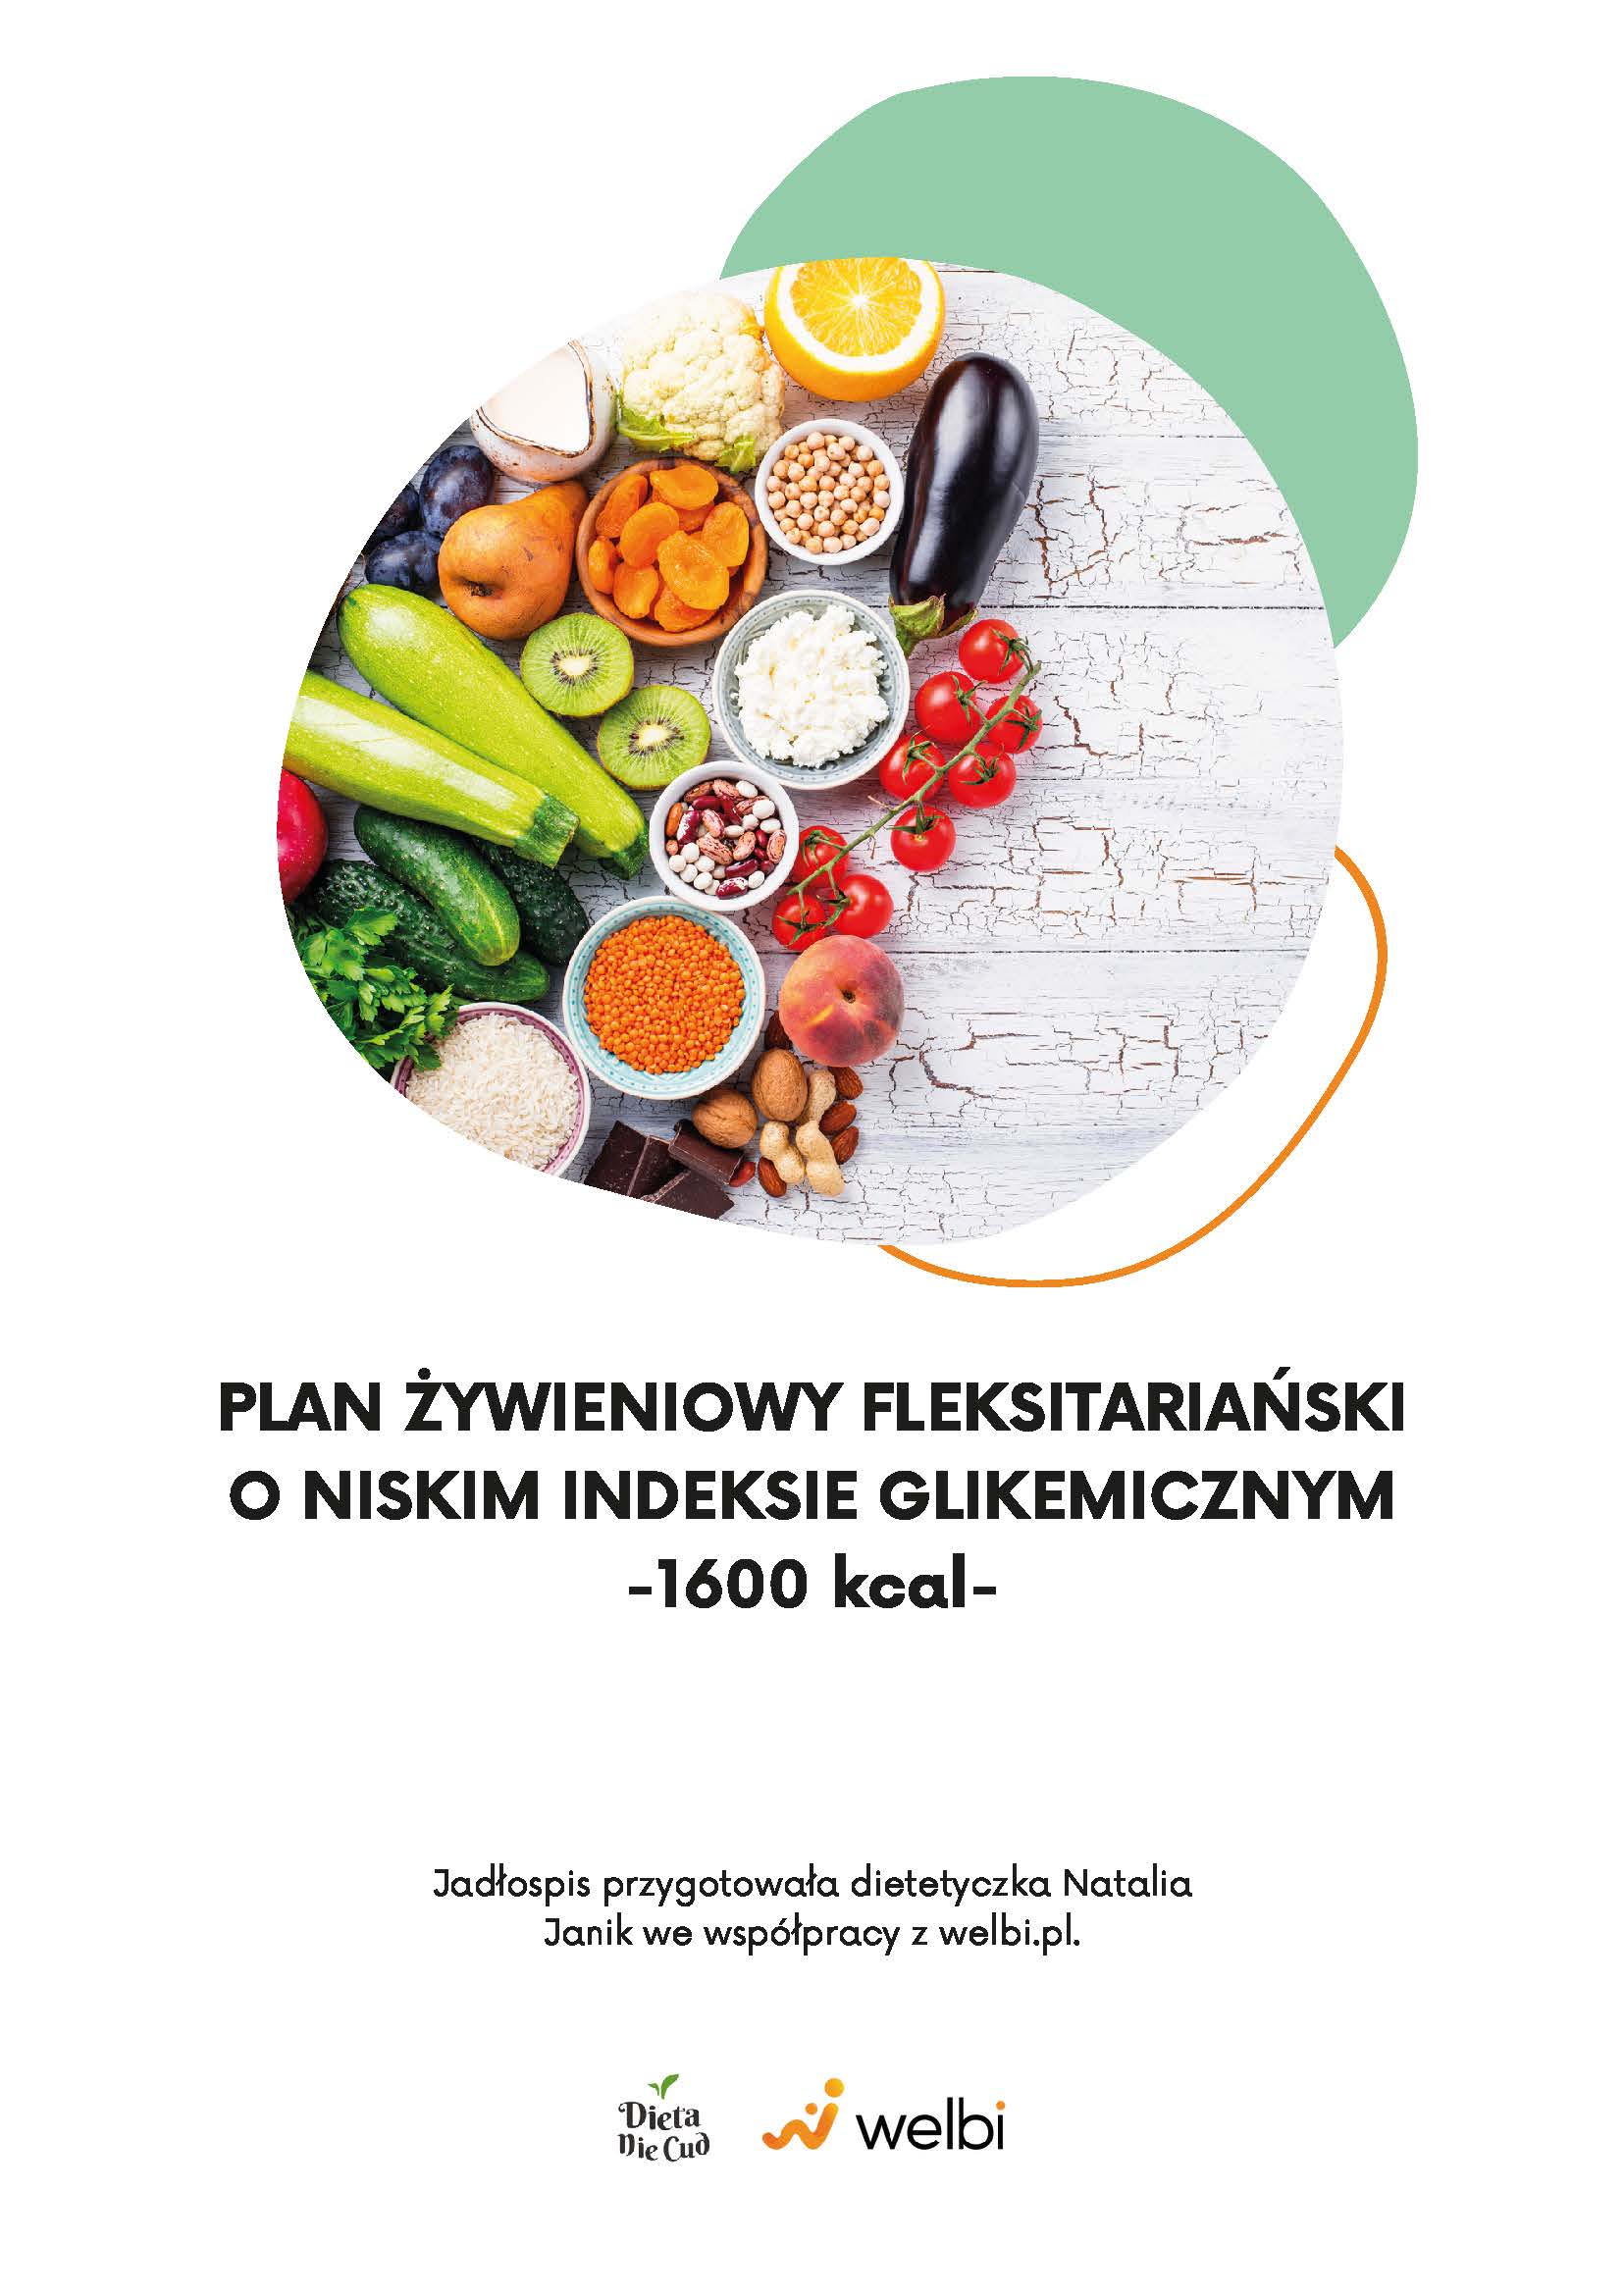 Plan żywieniowy fleksitariański o niskim indeksie glikemicznym 1600 kcal